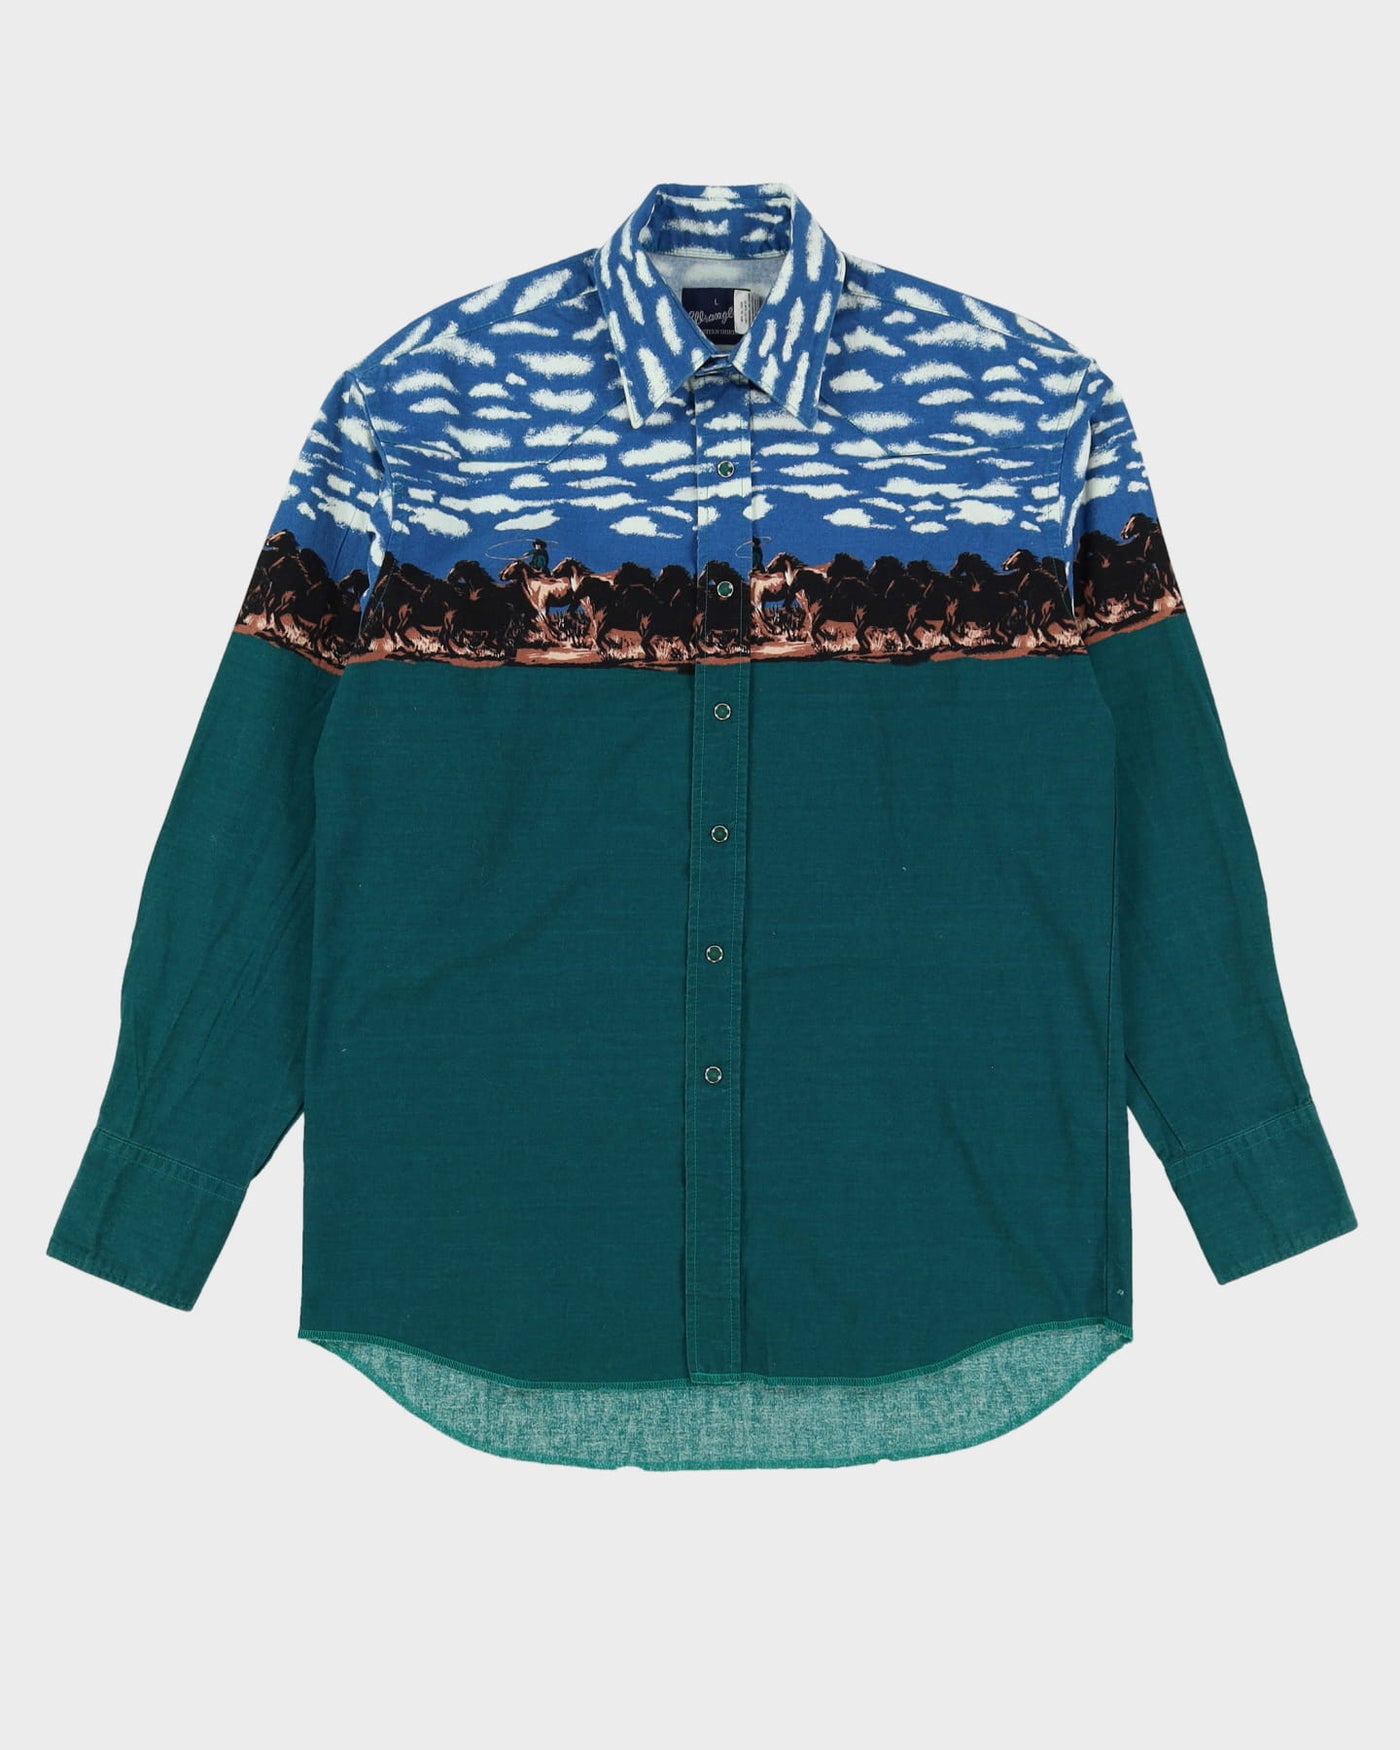 90s Wrangler Green / Blue Sky Horse Patterned Western Shirt - L – Rokit